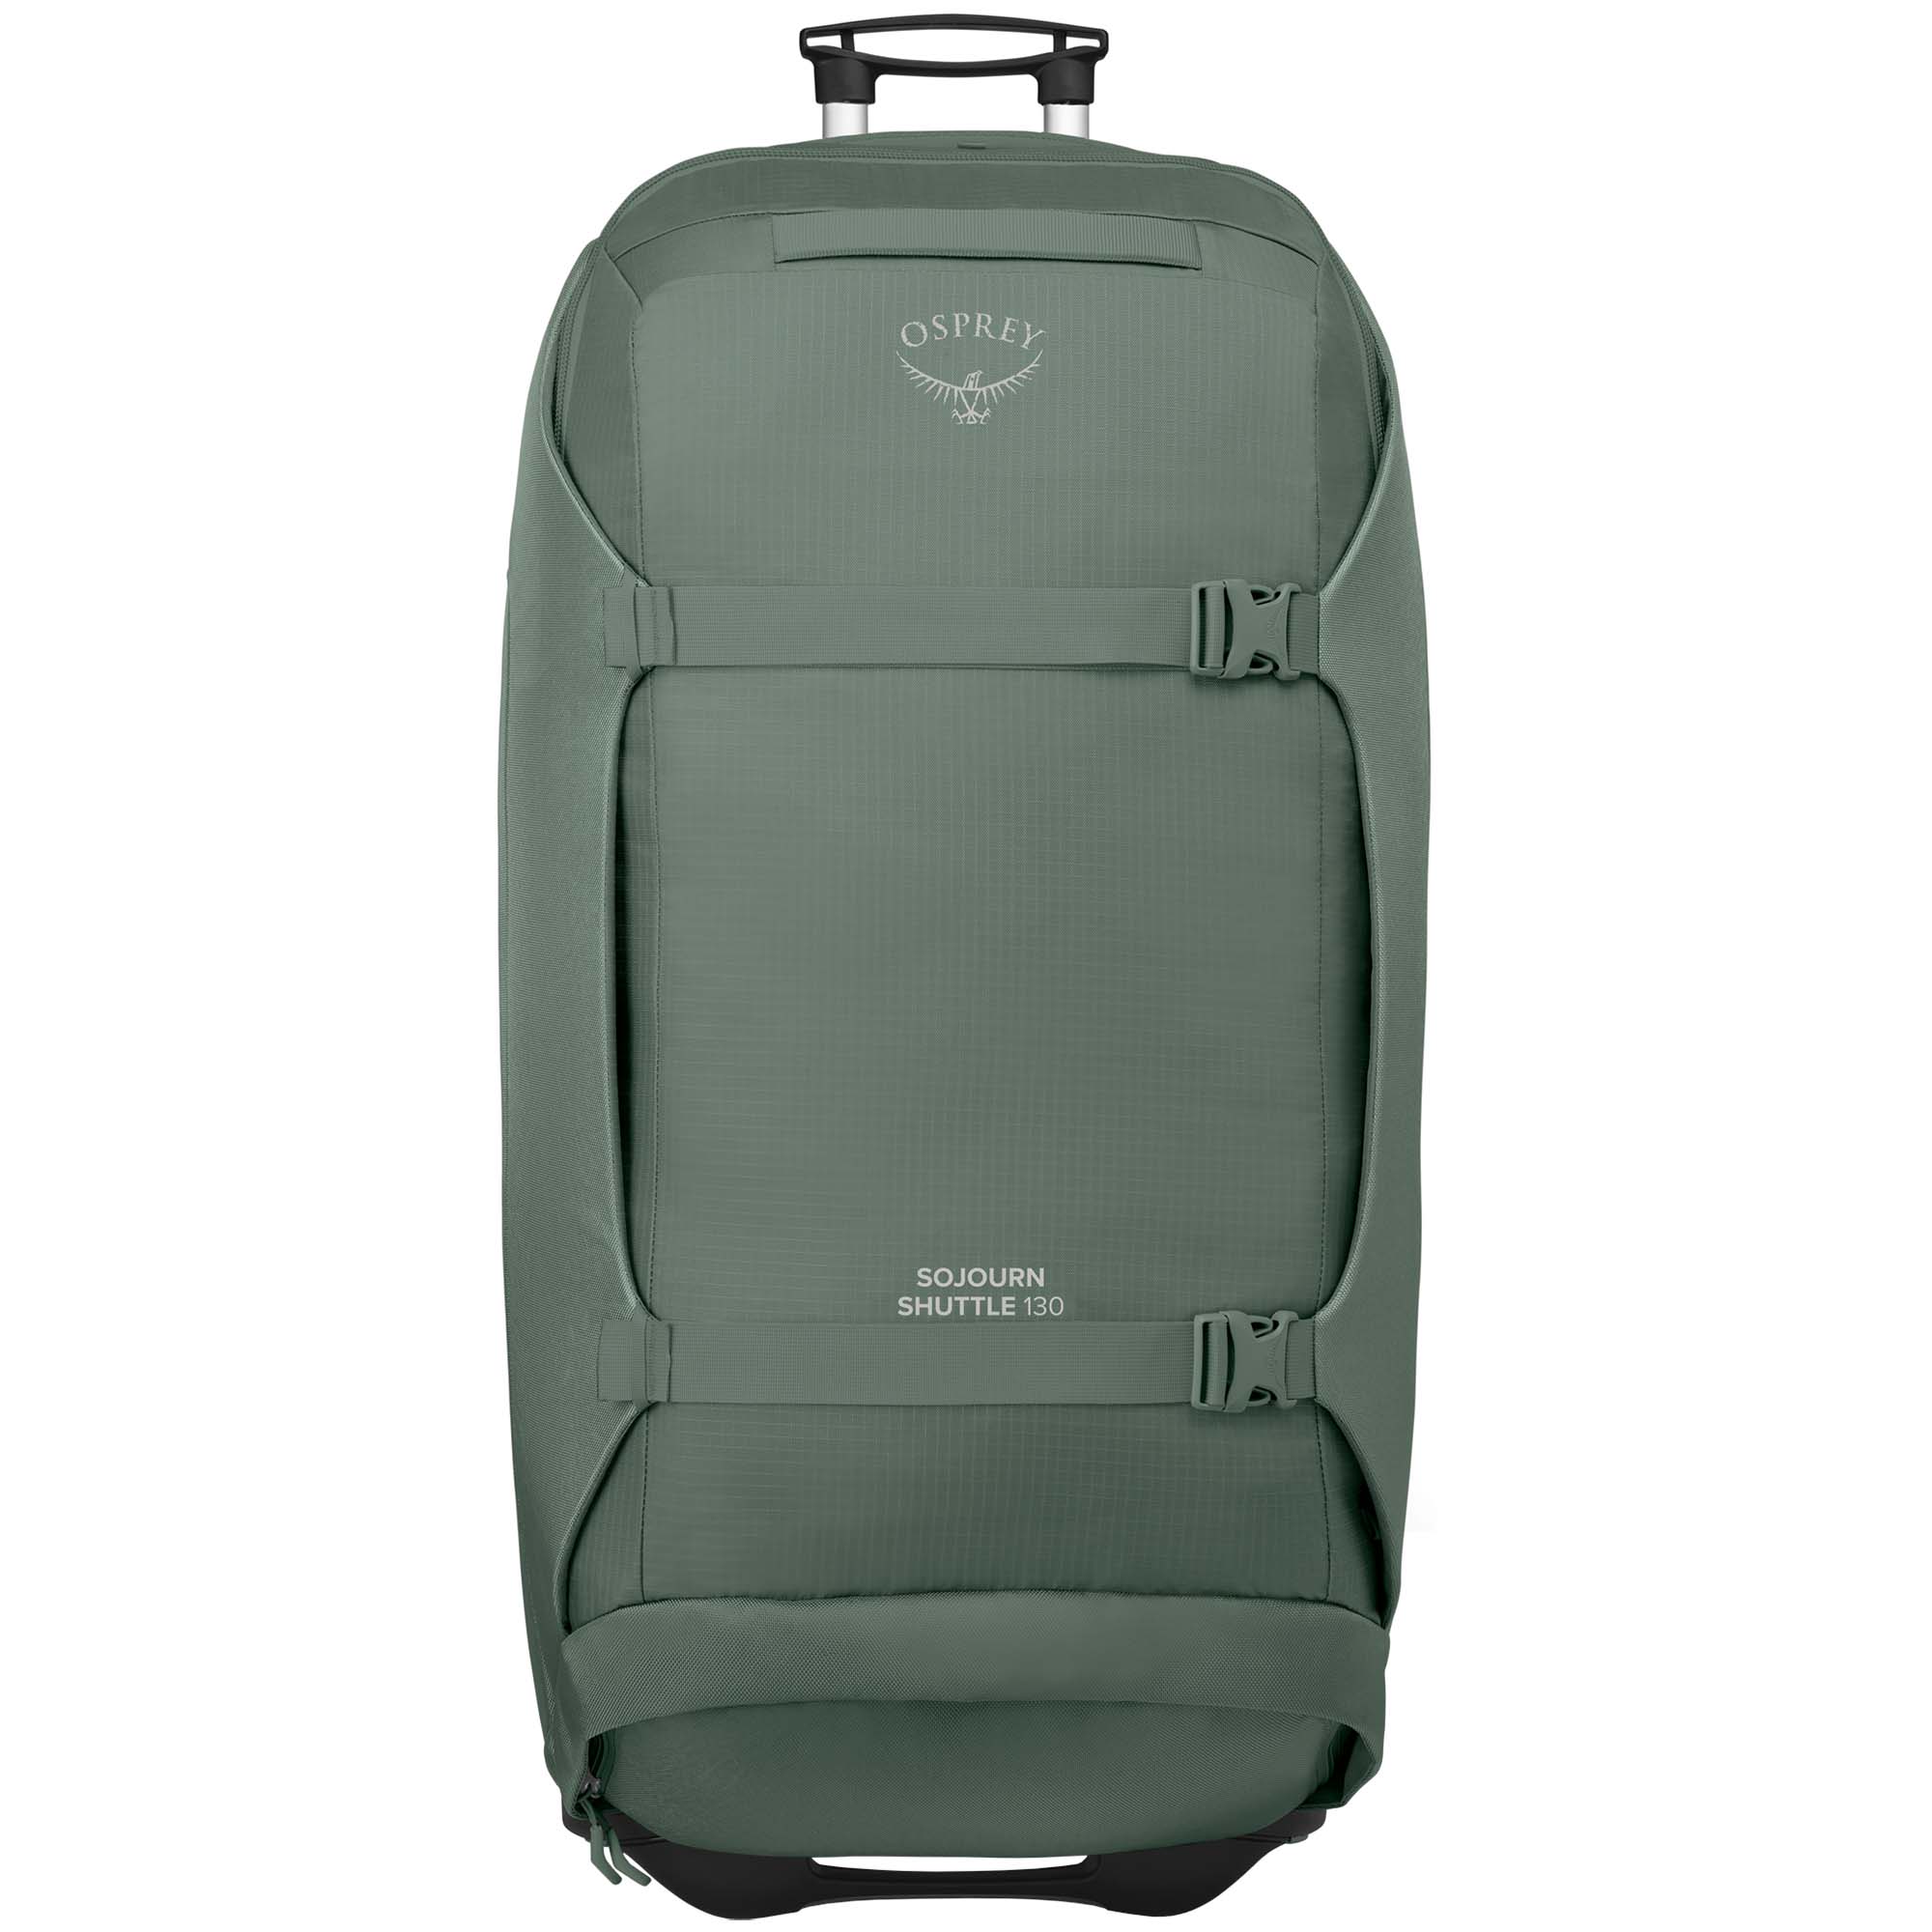 Osprey Sojourn Shuttle 130 Wheeled Duffle/Suitcase